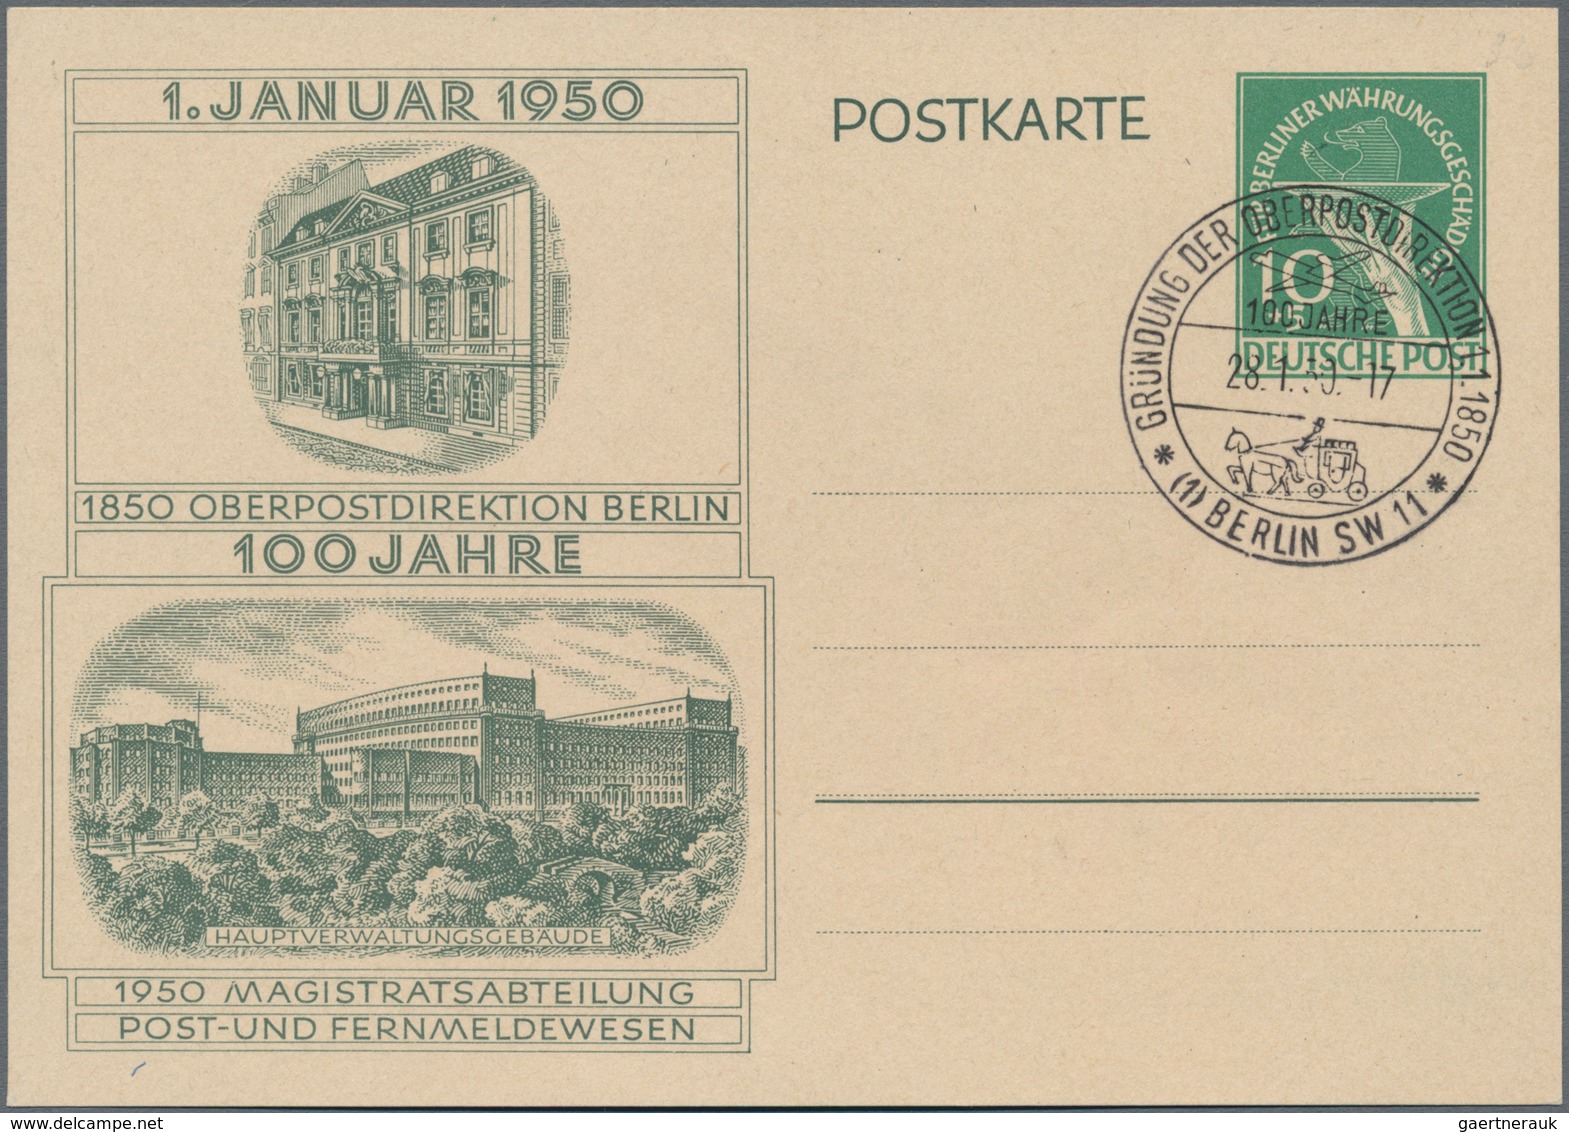 Berlin: 1949/1954, Partie von ca. 72 Briefen und Karten, meist philatelistische Stücke, dabei etlich